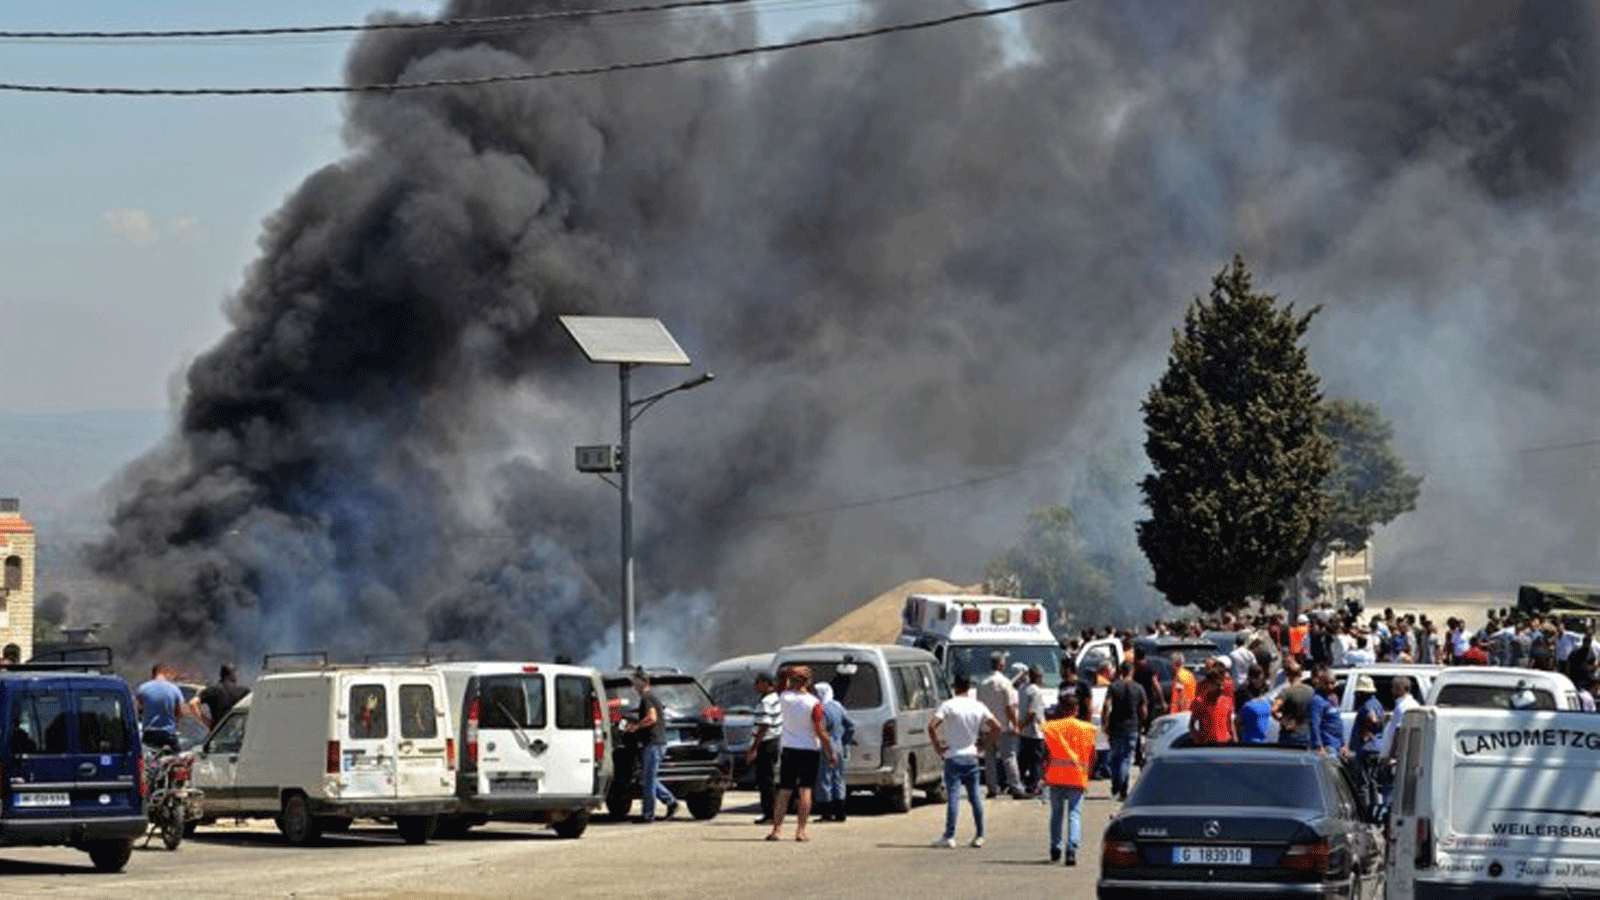 الناس يتجمعون بينما يتصاعد الدخان حيث انفجر خزان الوقود، في قرية التليل في منطقة عكار شمال لبنان. الأحد 15 آب/ أغسطس 2021